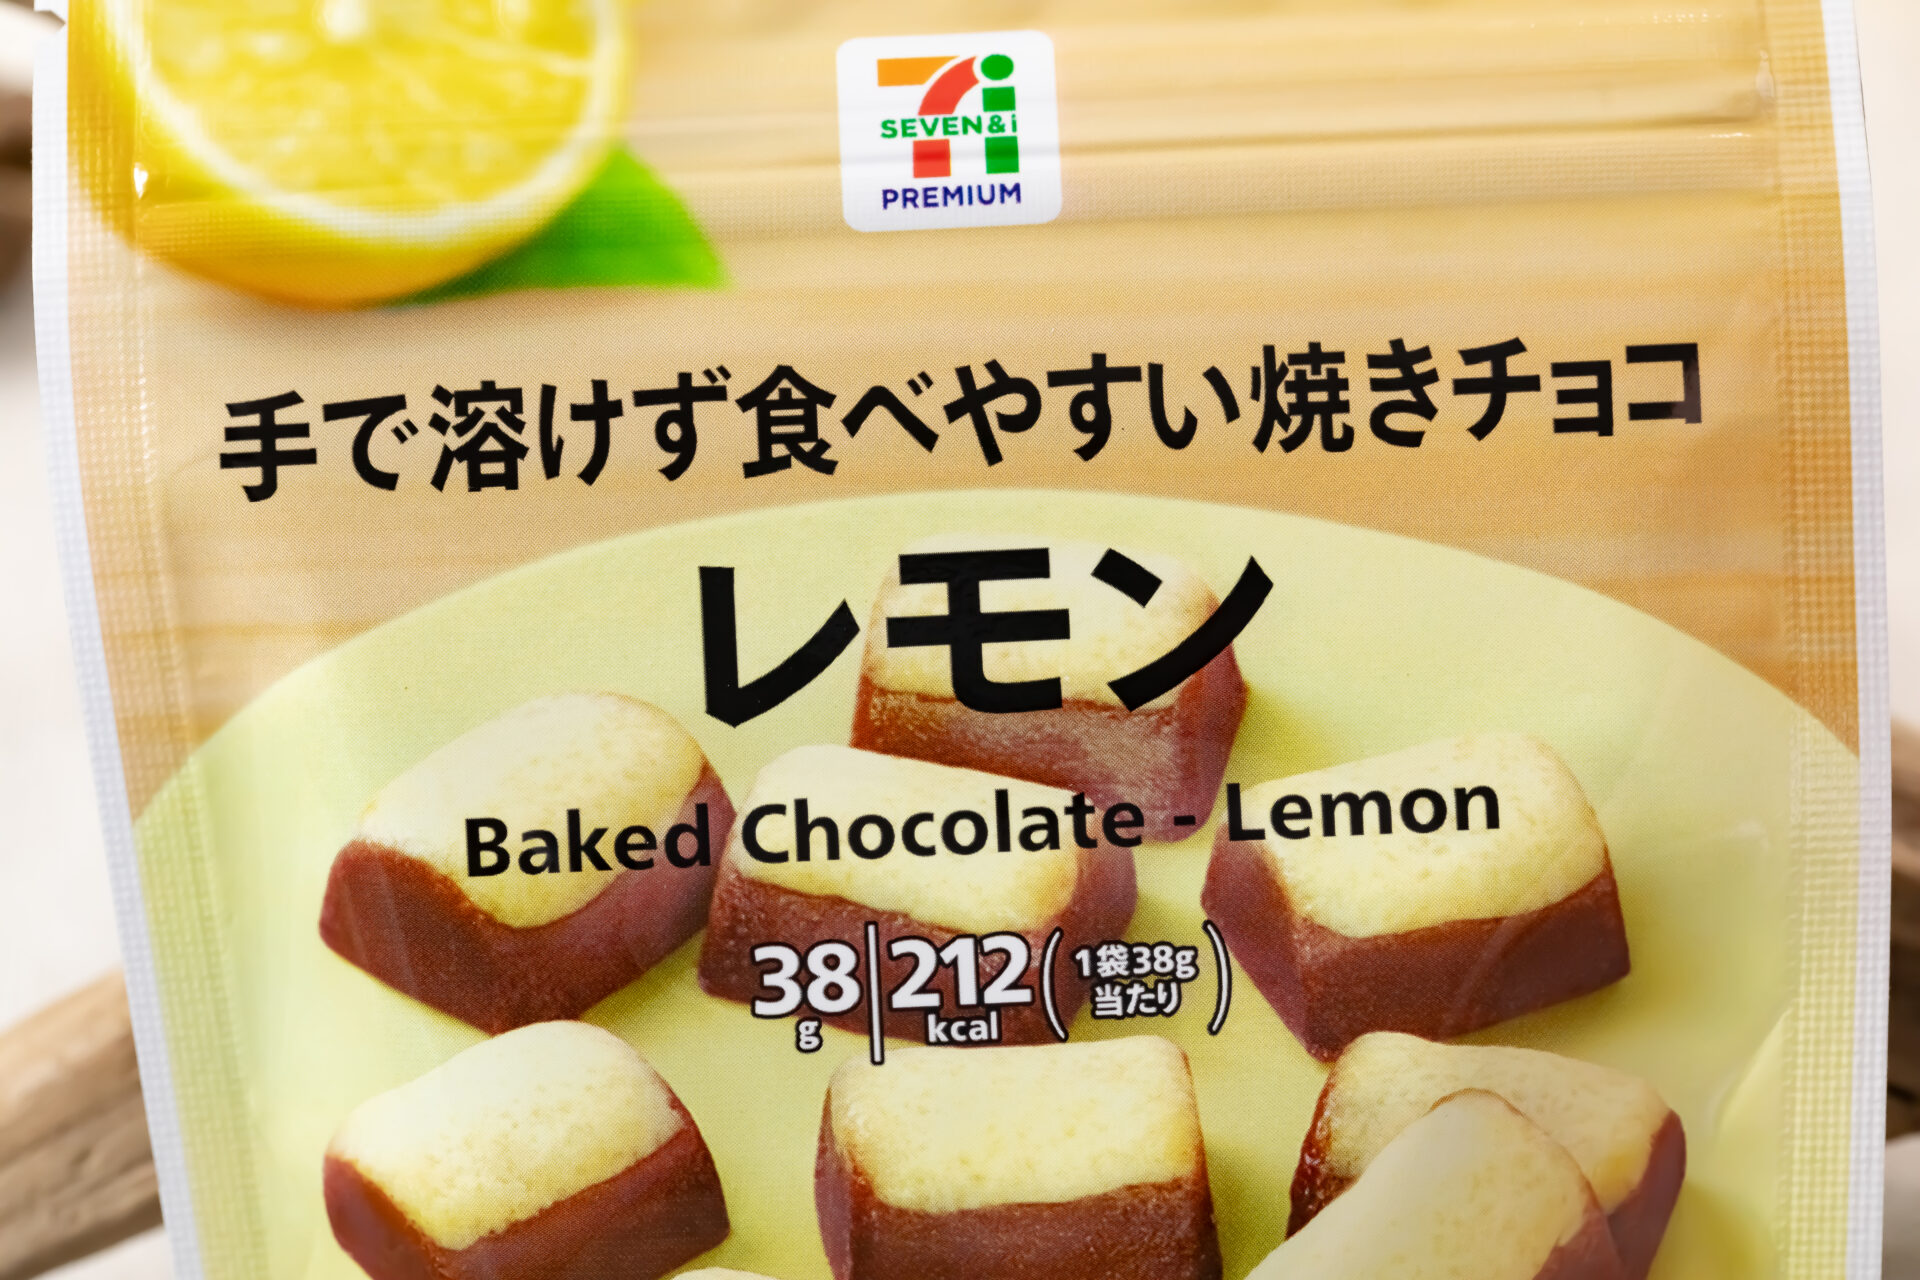 セブンプレミアム『焼きチョコ レモン 38g』